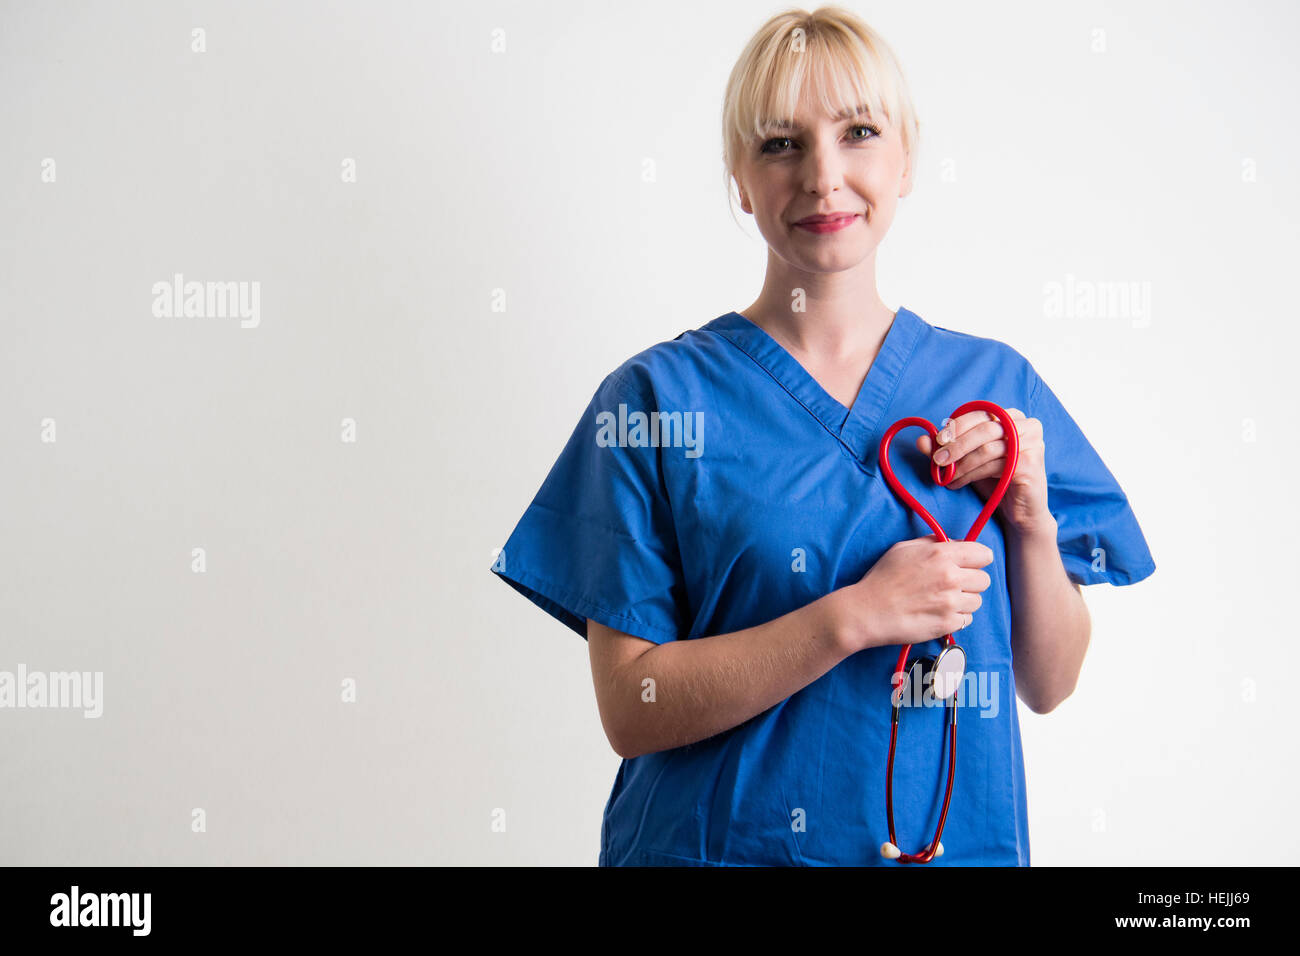 Les professionnels de la Santé du Royaume-Uni : A National Health Service (NHS) femme female nurse holding a stethescope rouge en forme de cœur. Banque D'Images